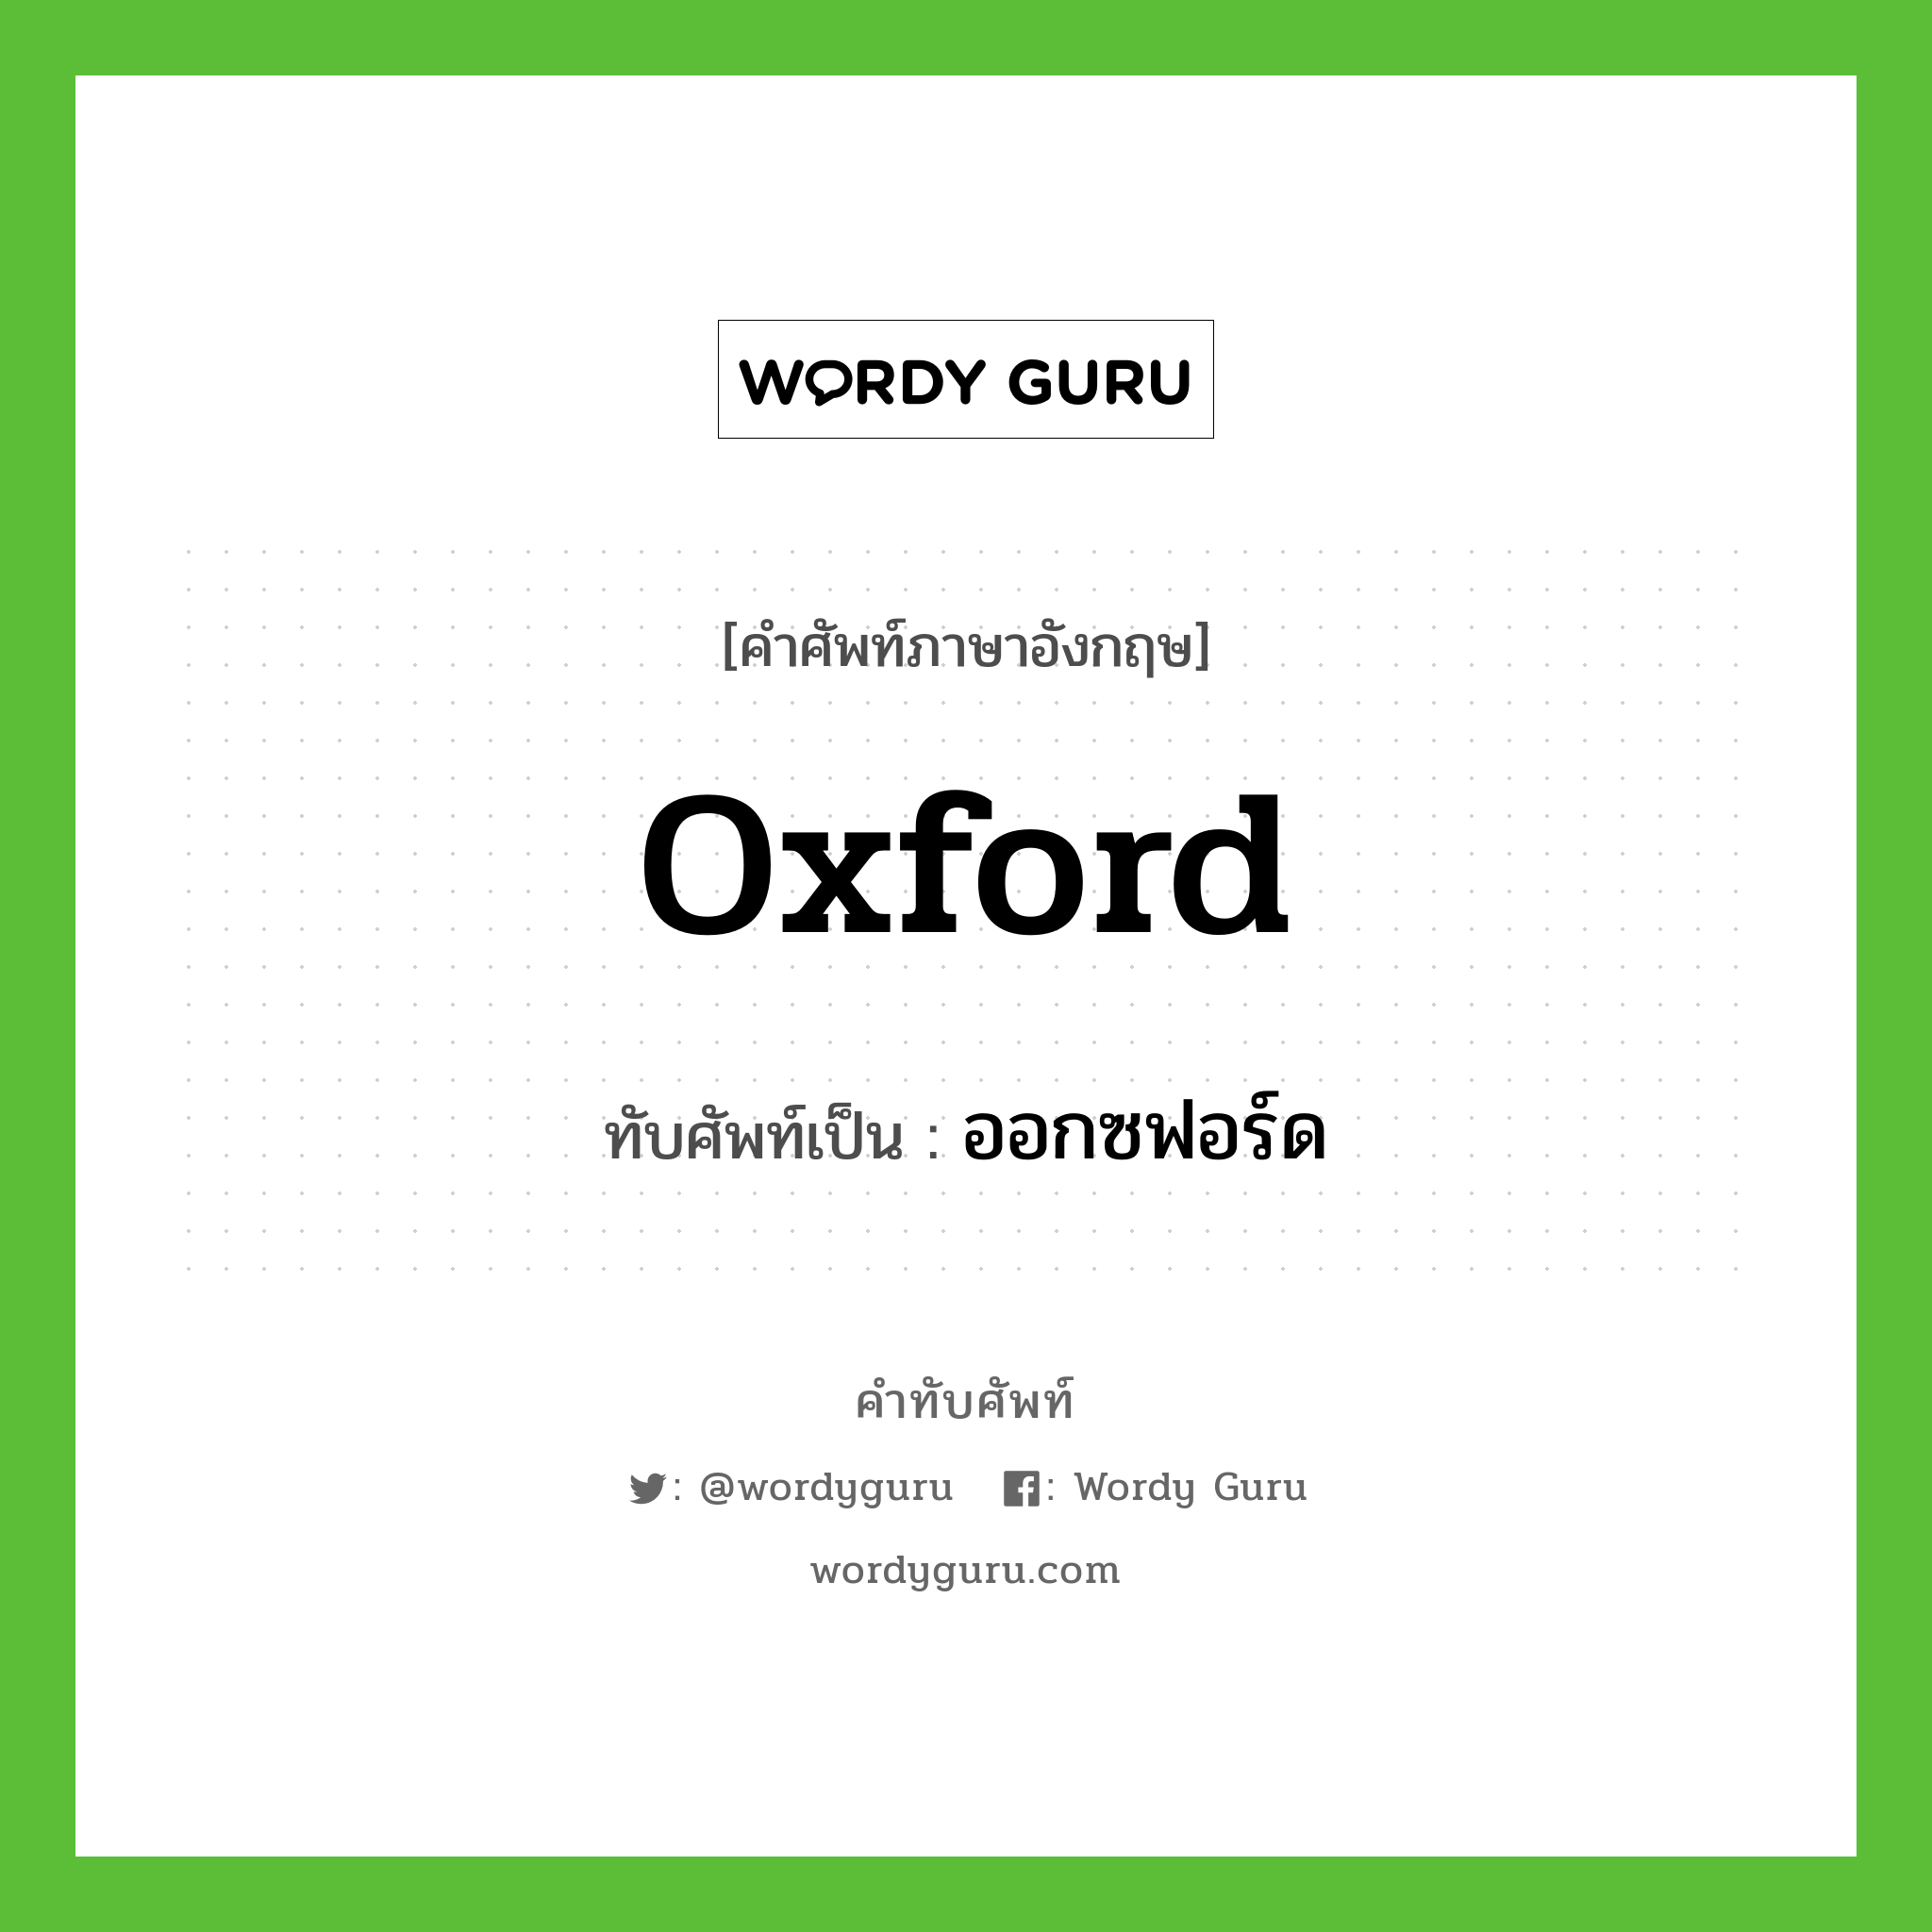 oxford เขียนเป็นคำไทยว่าอะไร?, คำศัพท์ภาษาอังกฤษ oxford ทับศัพท์เป็น ออกซฟอร์ด